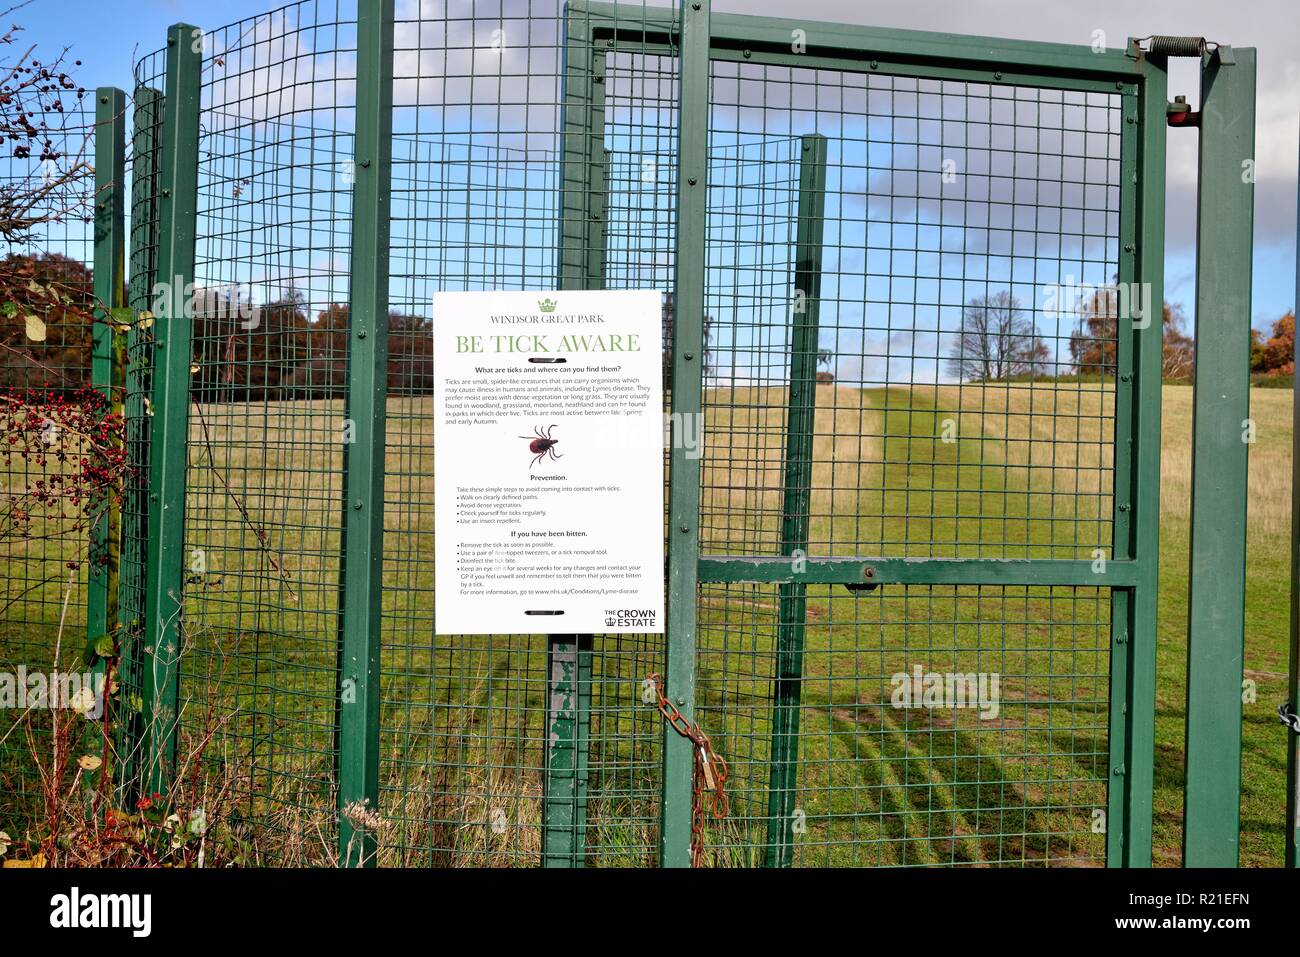 L'avis sur une porte de la région de Windsor Great Park avertissement sur les dangers de tiques, Berkshire England UK Banque D'Images